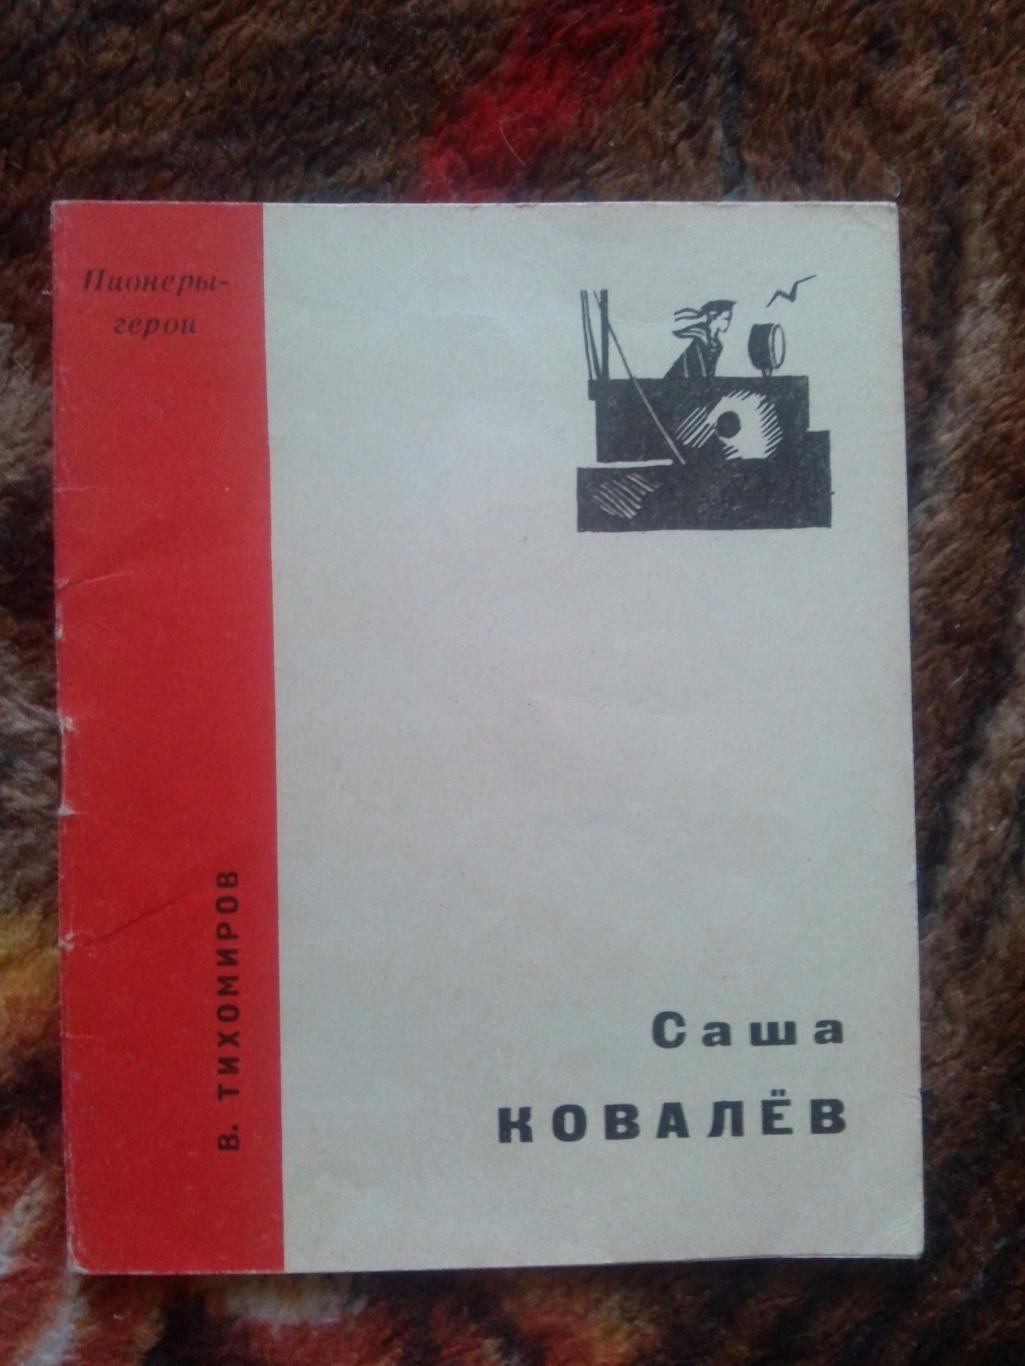 Пионеры-герои (Плакат + брошюра) 1967 г. Саша Ковалев (Пионер , агитация) 3